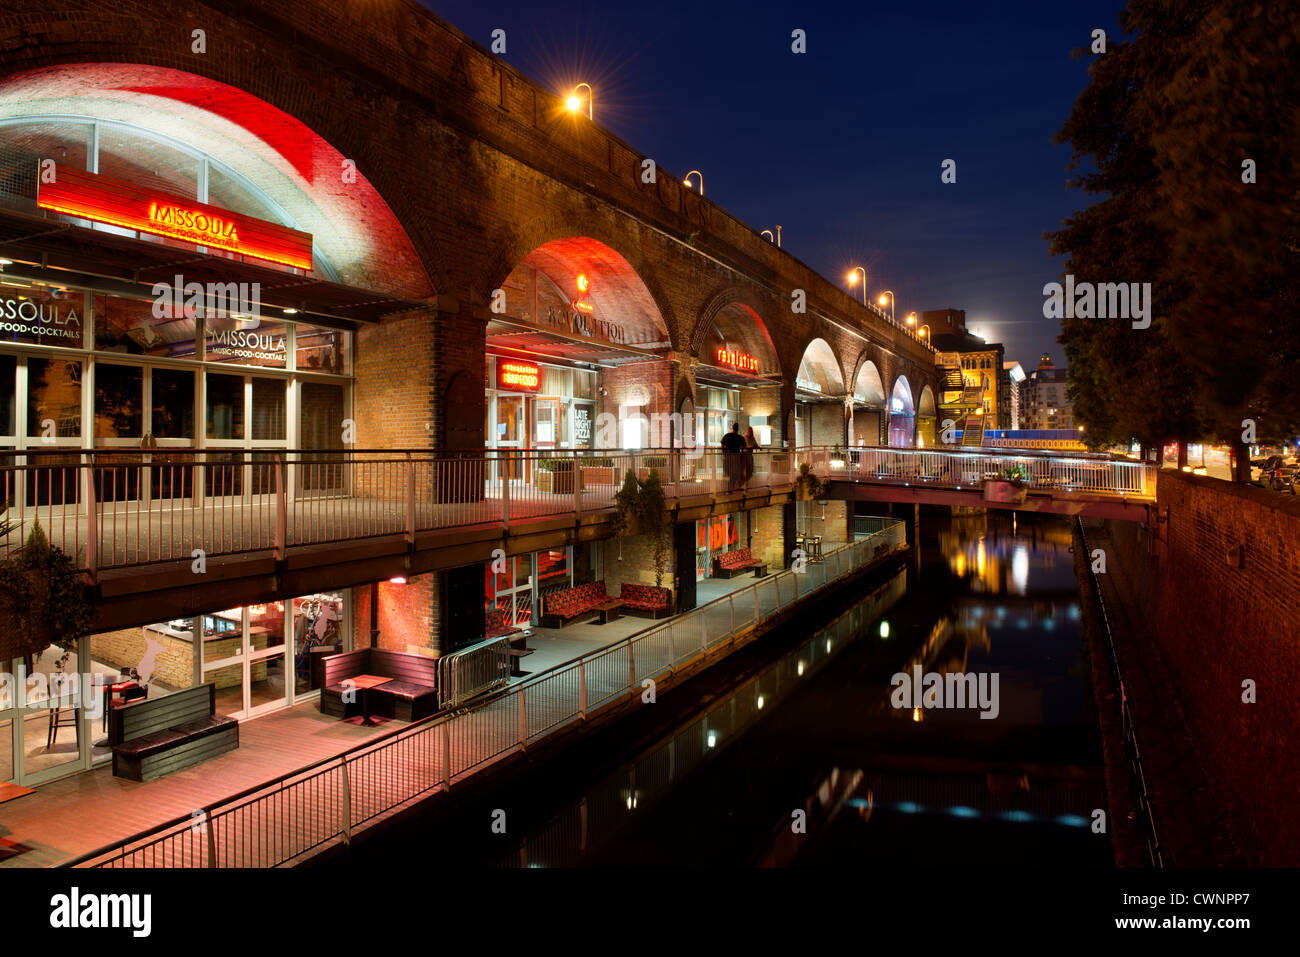 La vida nocturna de los bares y restaurantes de Deansgate bloquea los arcos en la noche, Manchester. Foto de stock